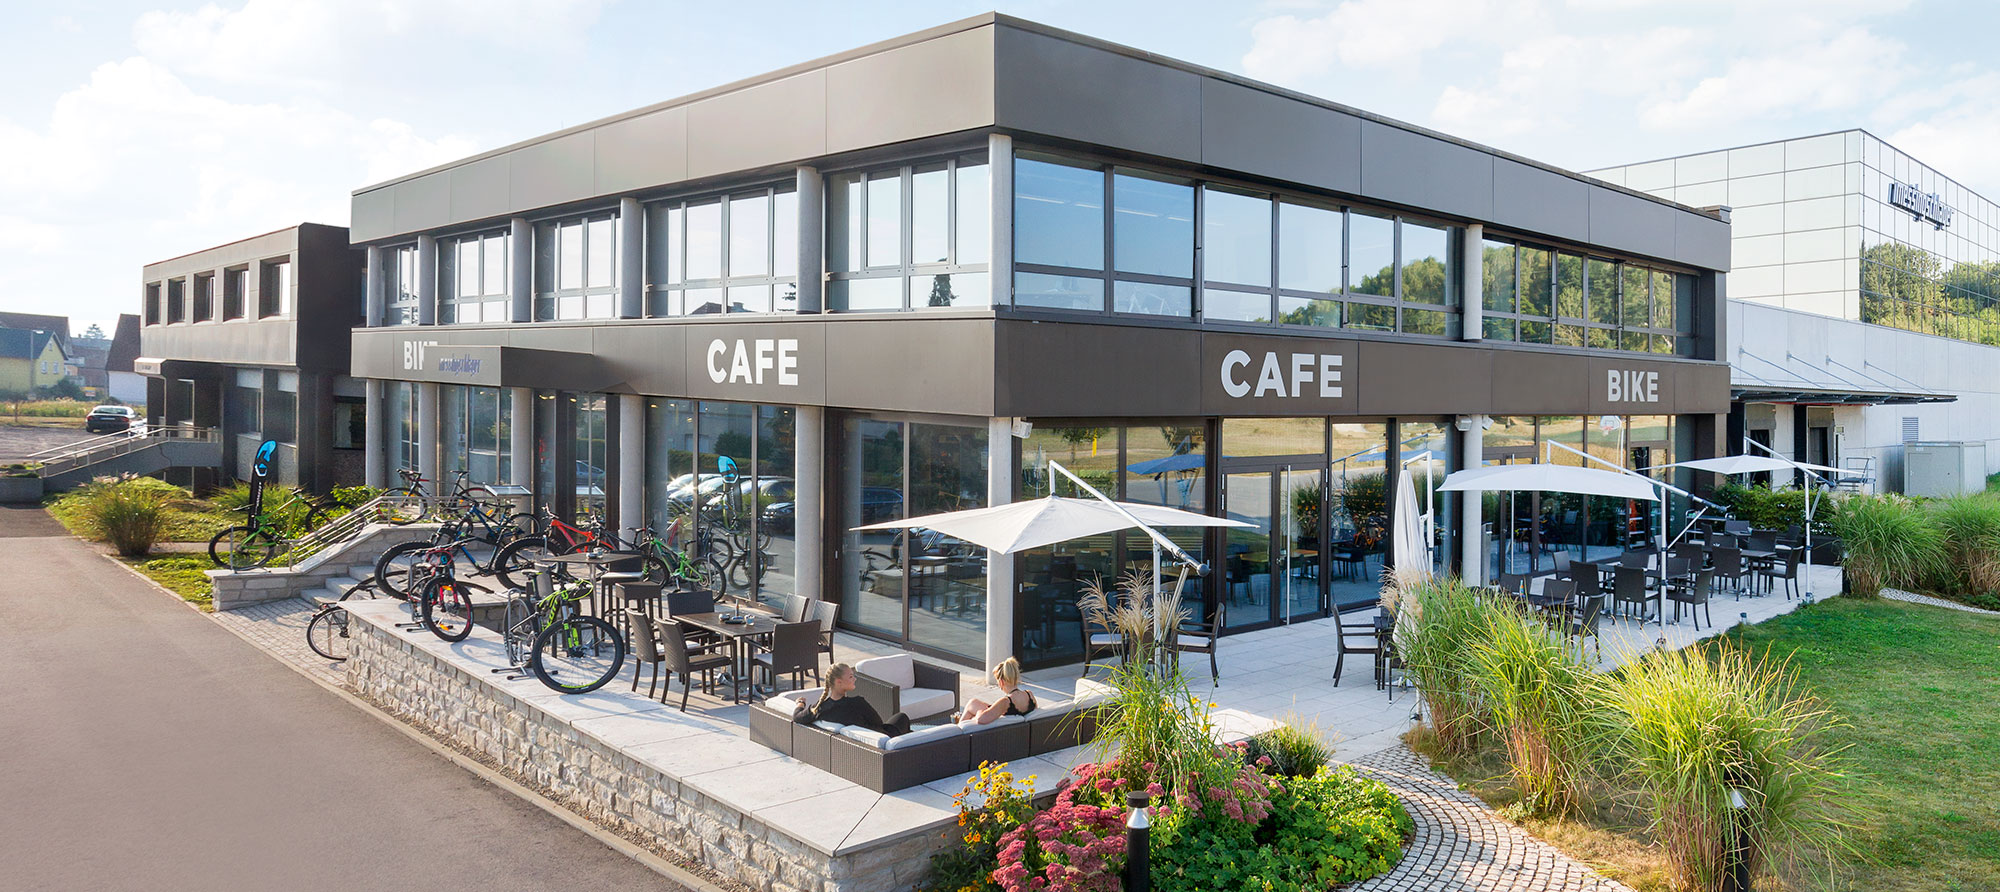 Bike-Cafe Messingschlager Außenansicht